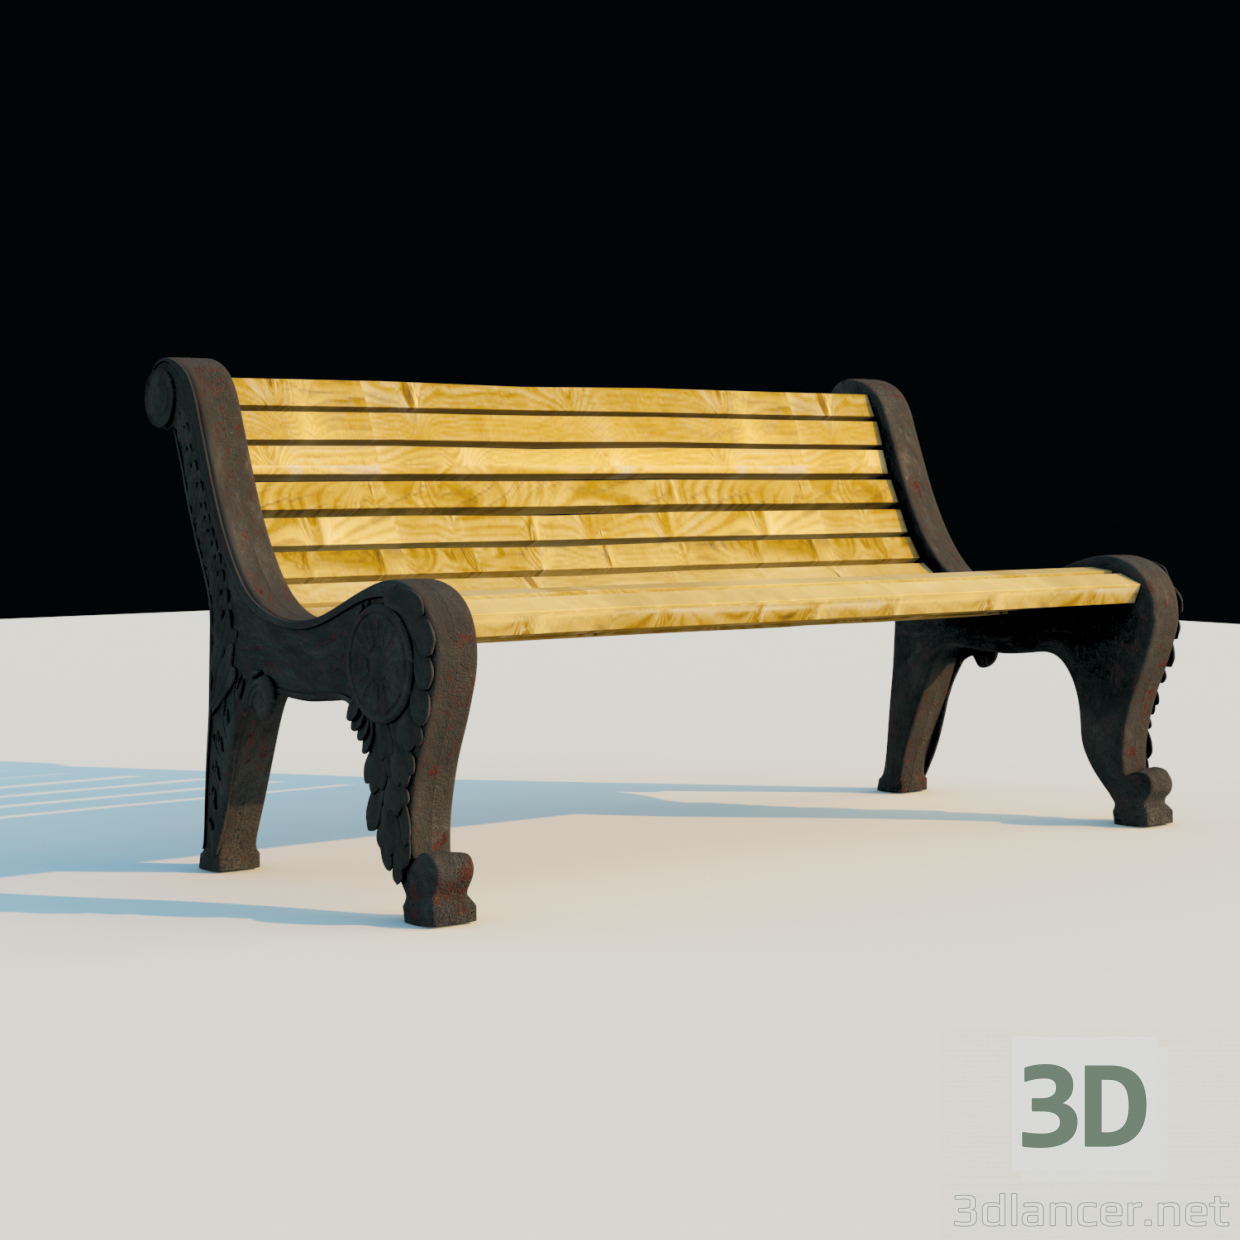 Banco de para uso urbano 3D modelo Compro - render